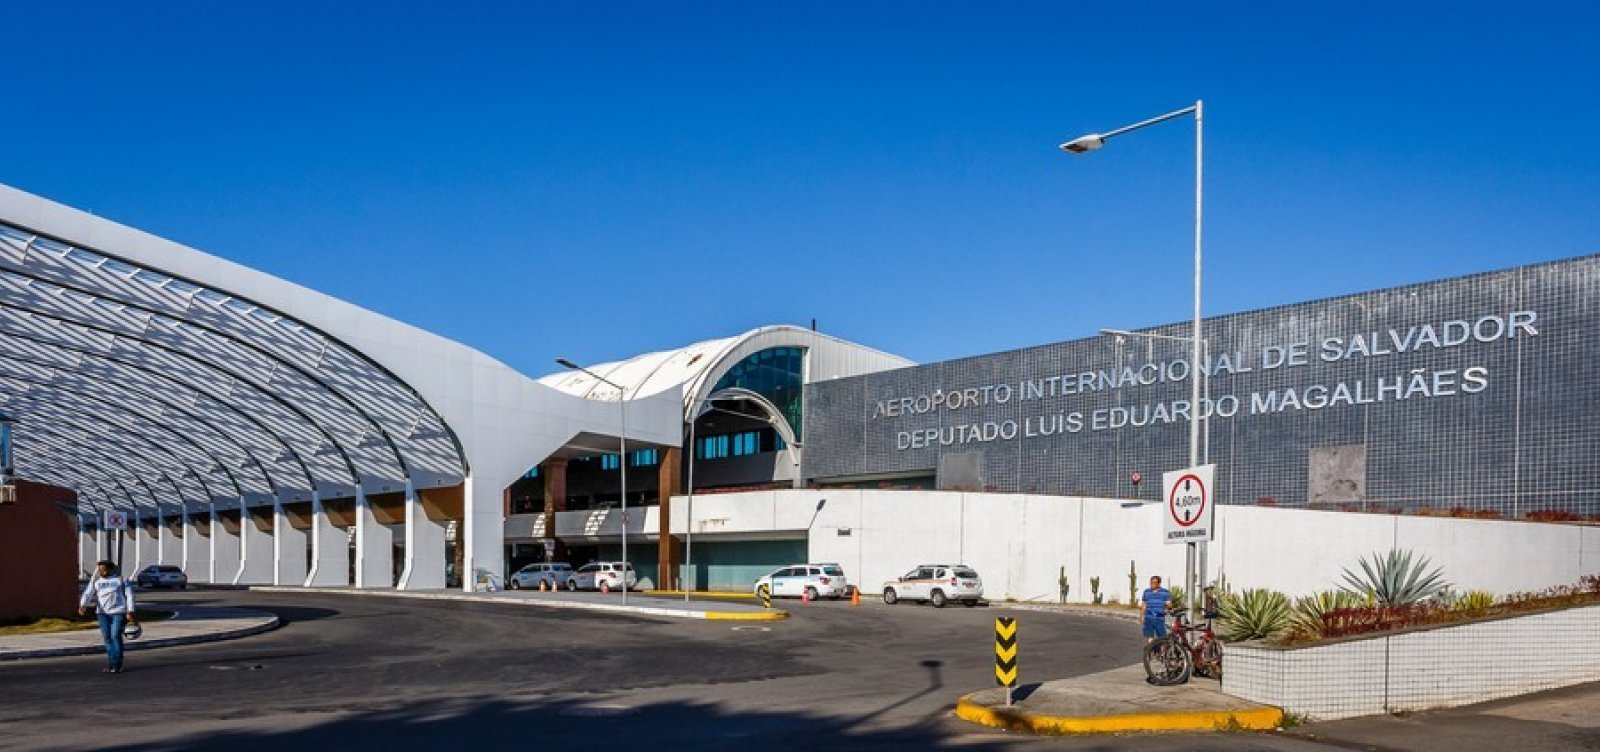 Aeroporto de Salvador registra aumento de 19% no número de passageiros internacionais